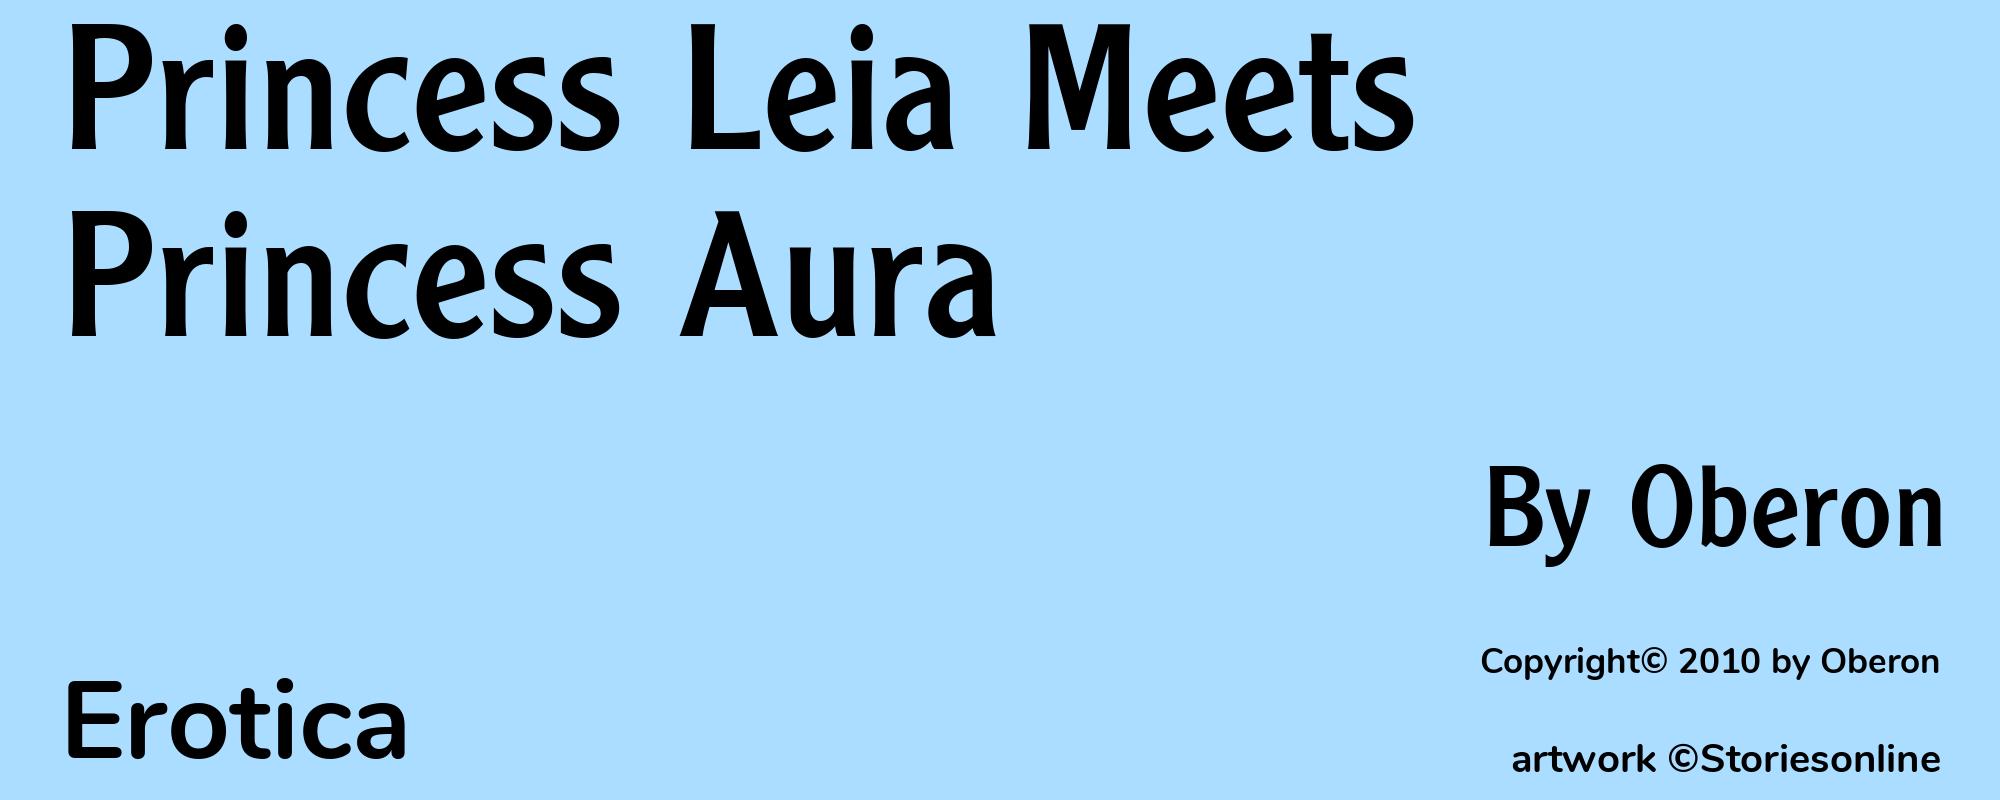 Princess Leia Meets Princess Aura - Cover